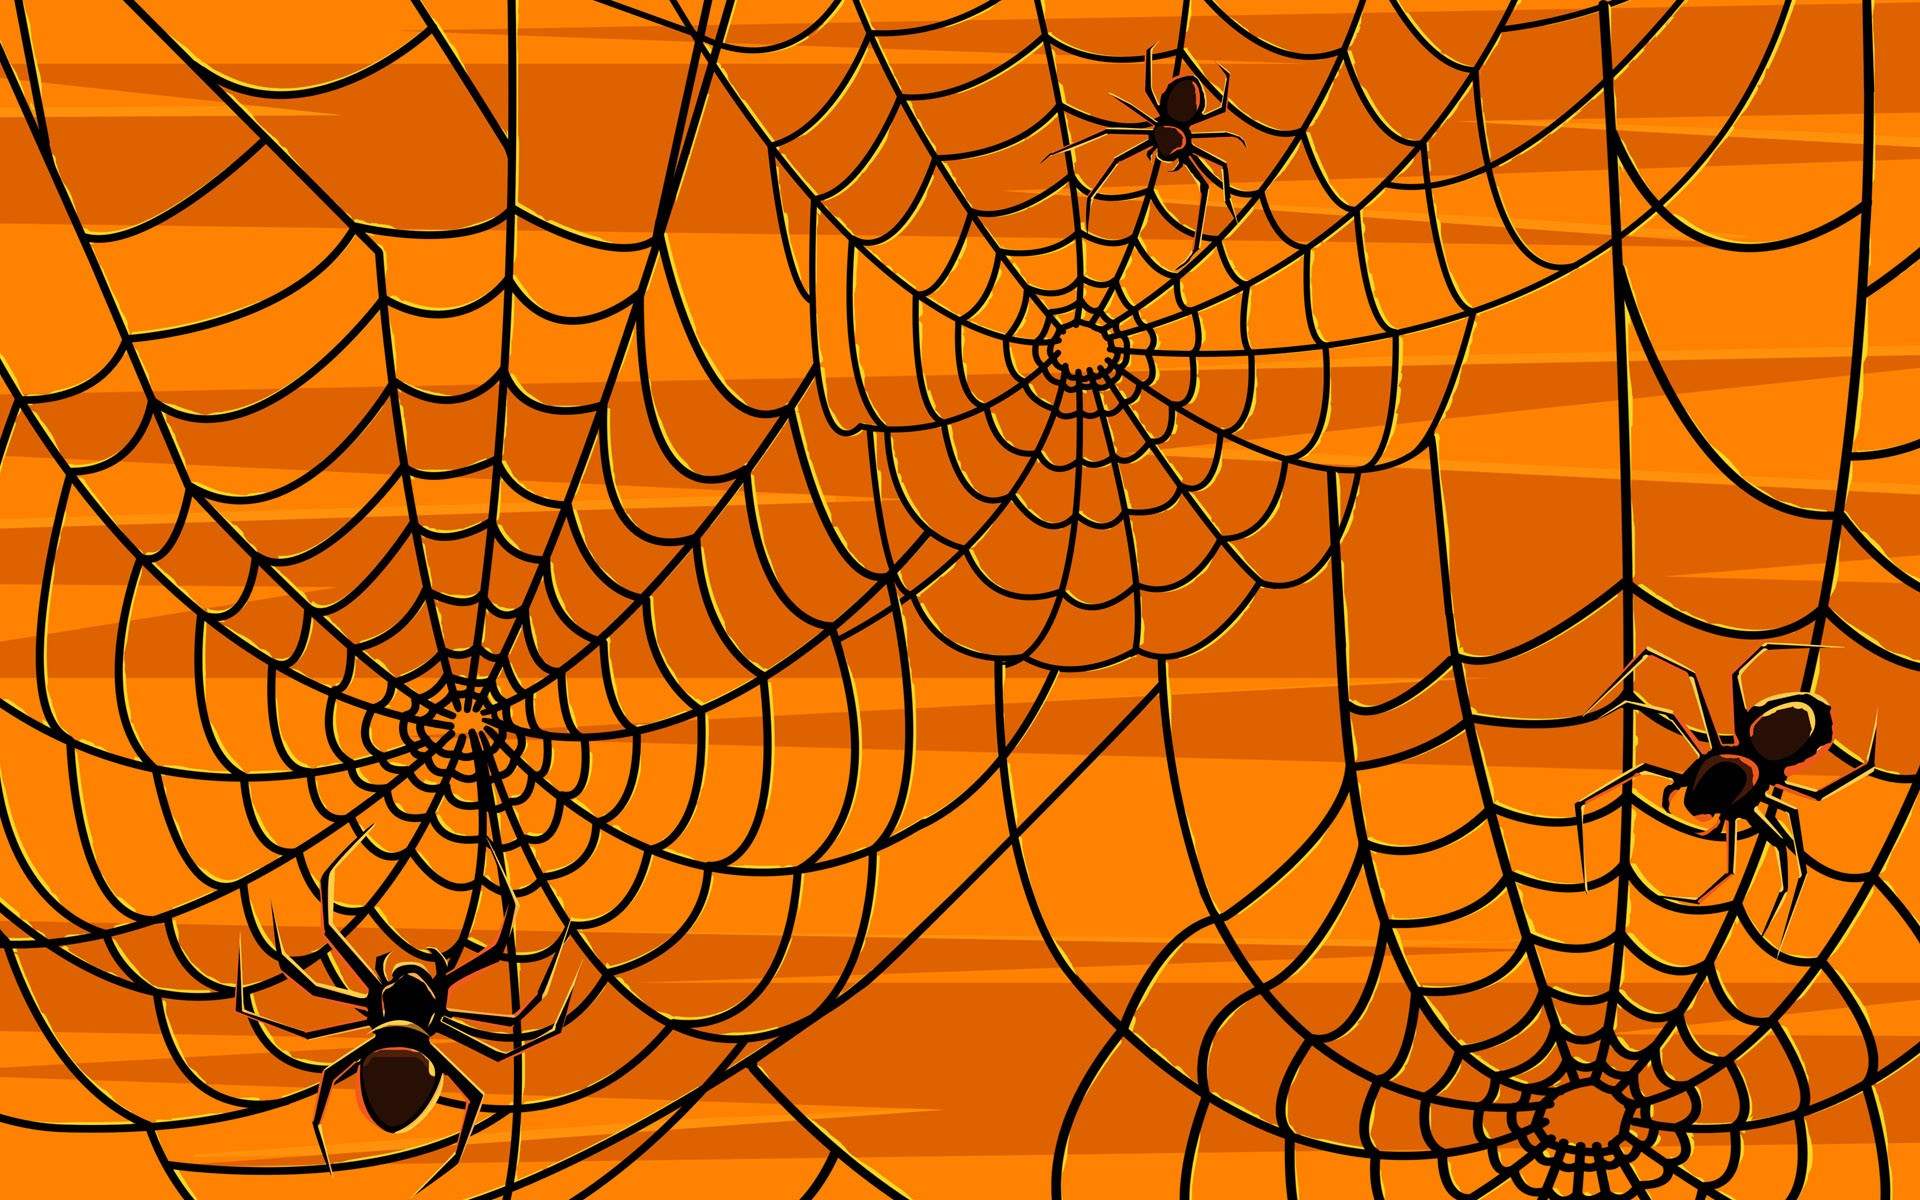 Halloween Spider Wallpapers